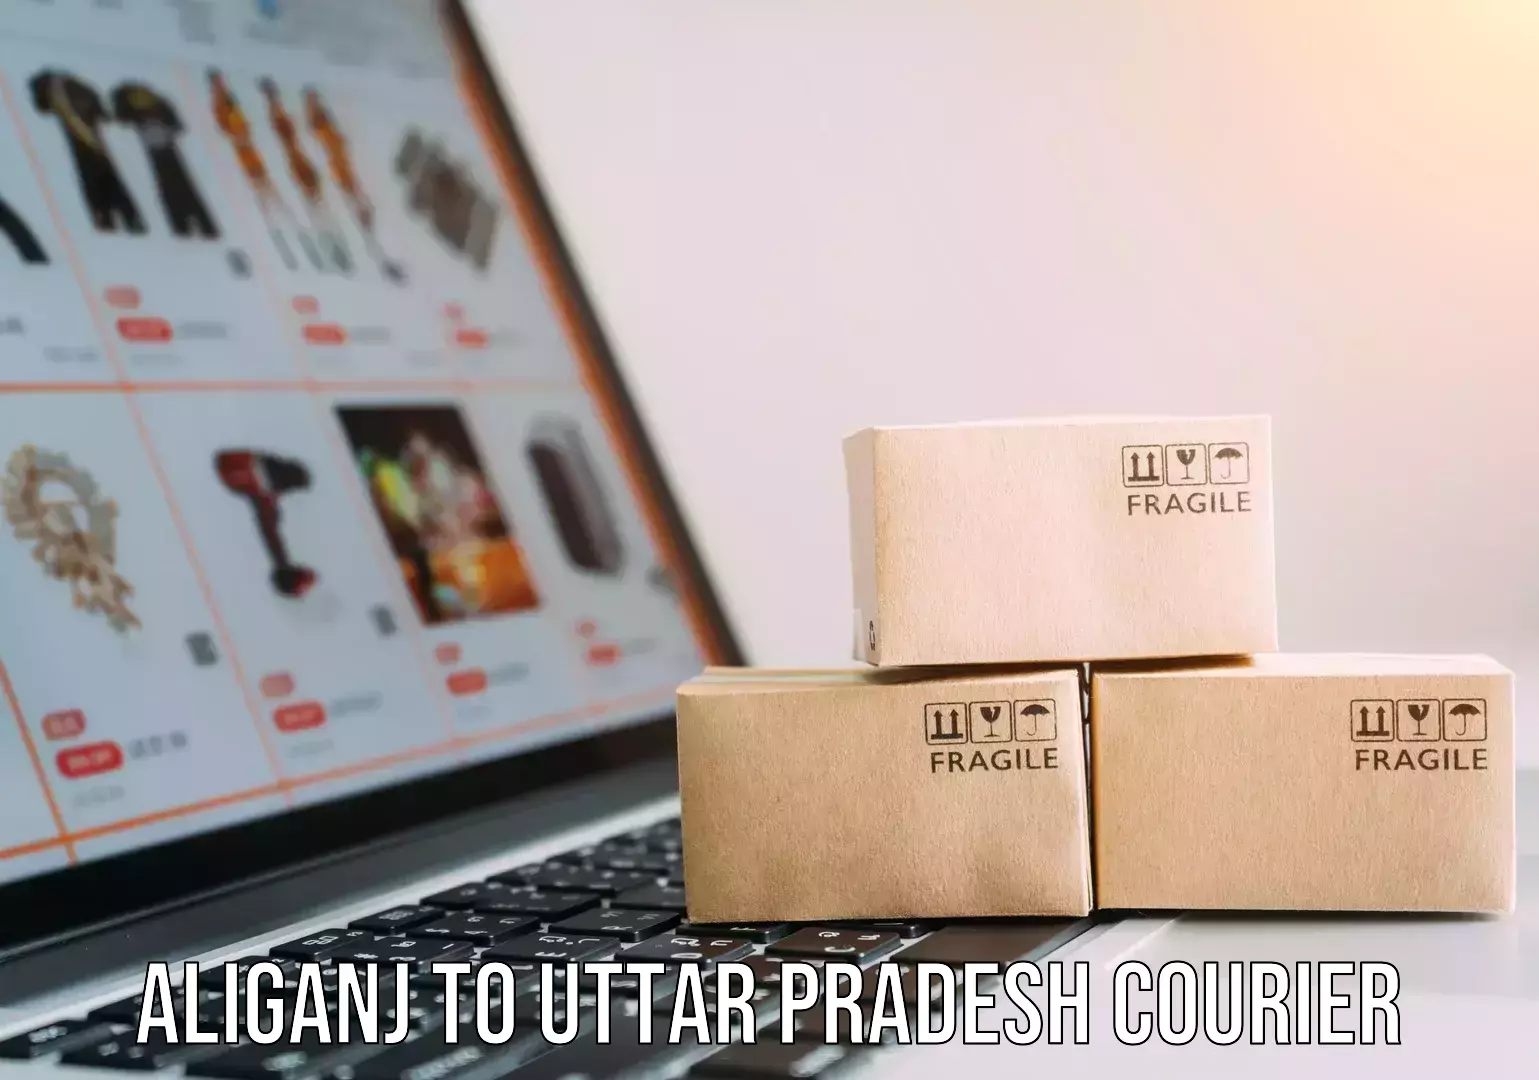 Pharmaceutical courier Aliganj to Uttar Pradesh